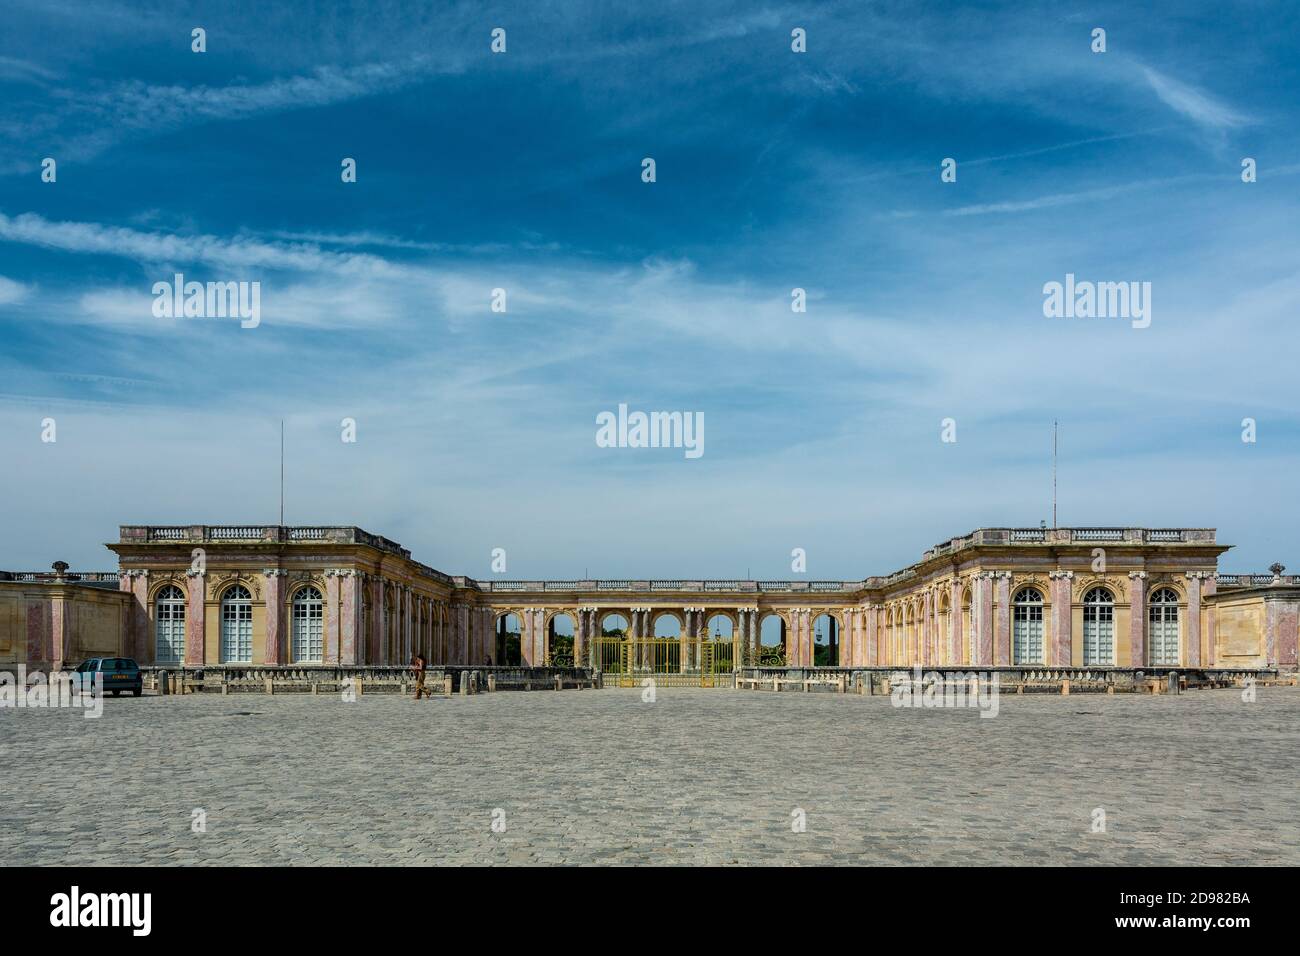 Versailles, Francia - 28 agosto 2019 : splendida vista panoramica del cortile in ciottoli e del colonnato riparato che collega le due ali del Th Foto Stock